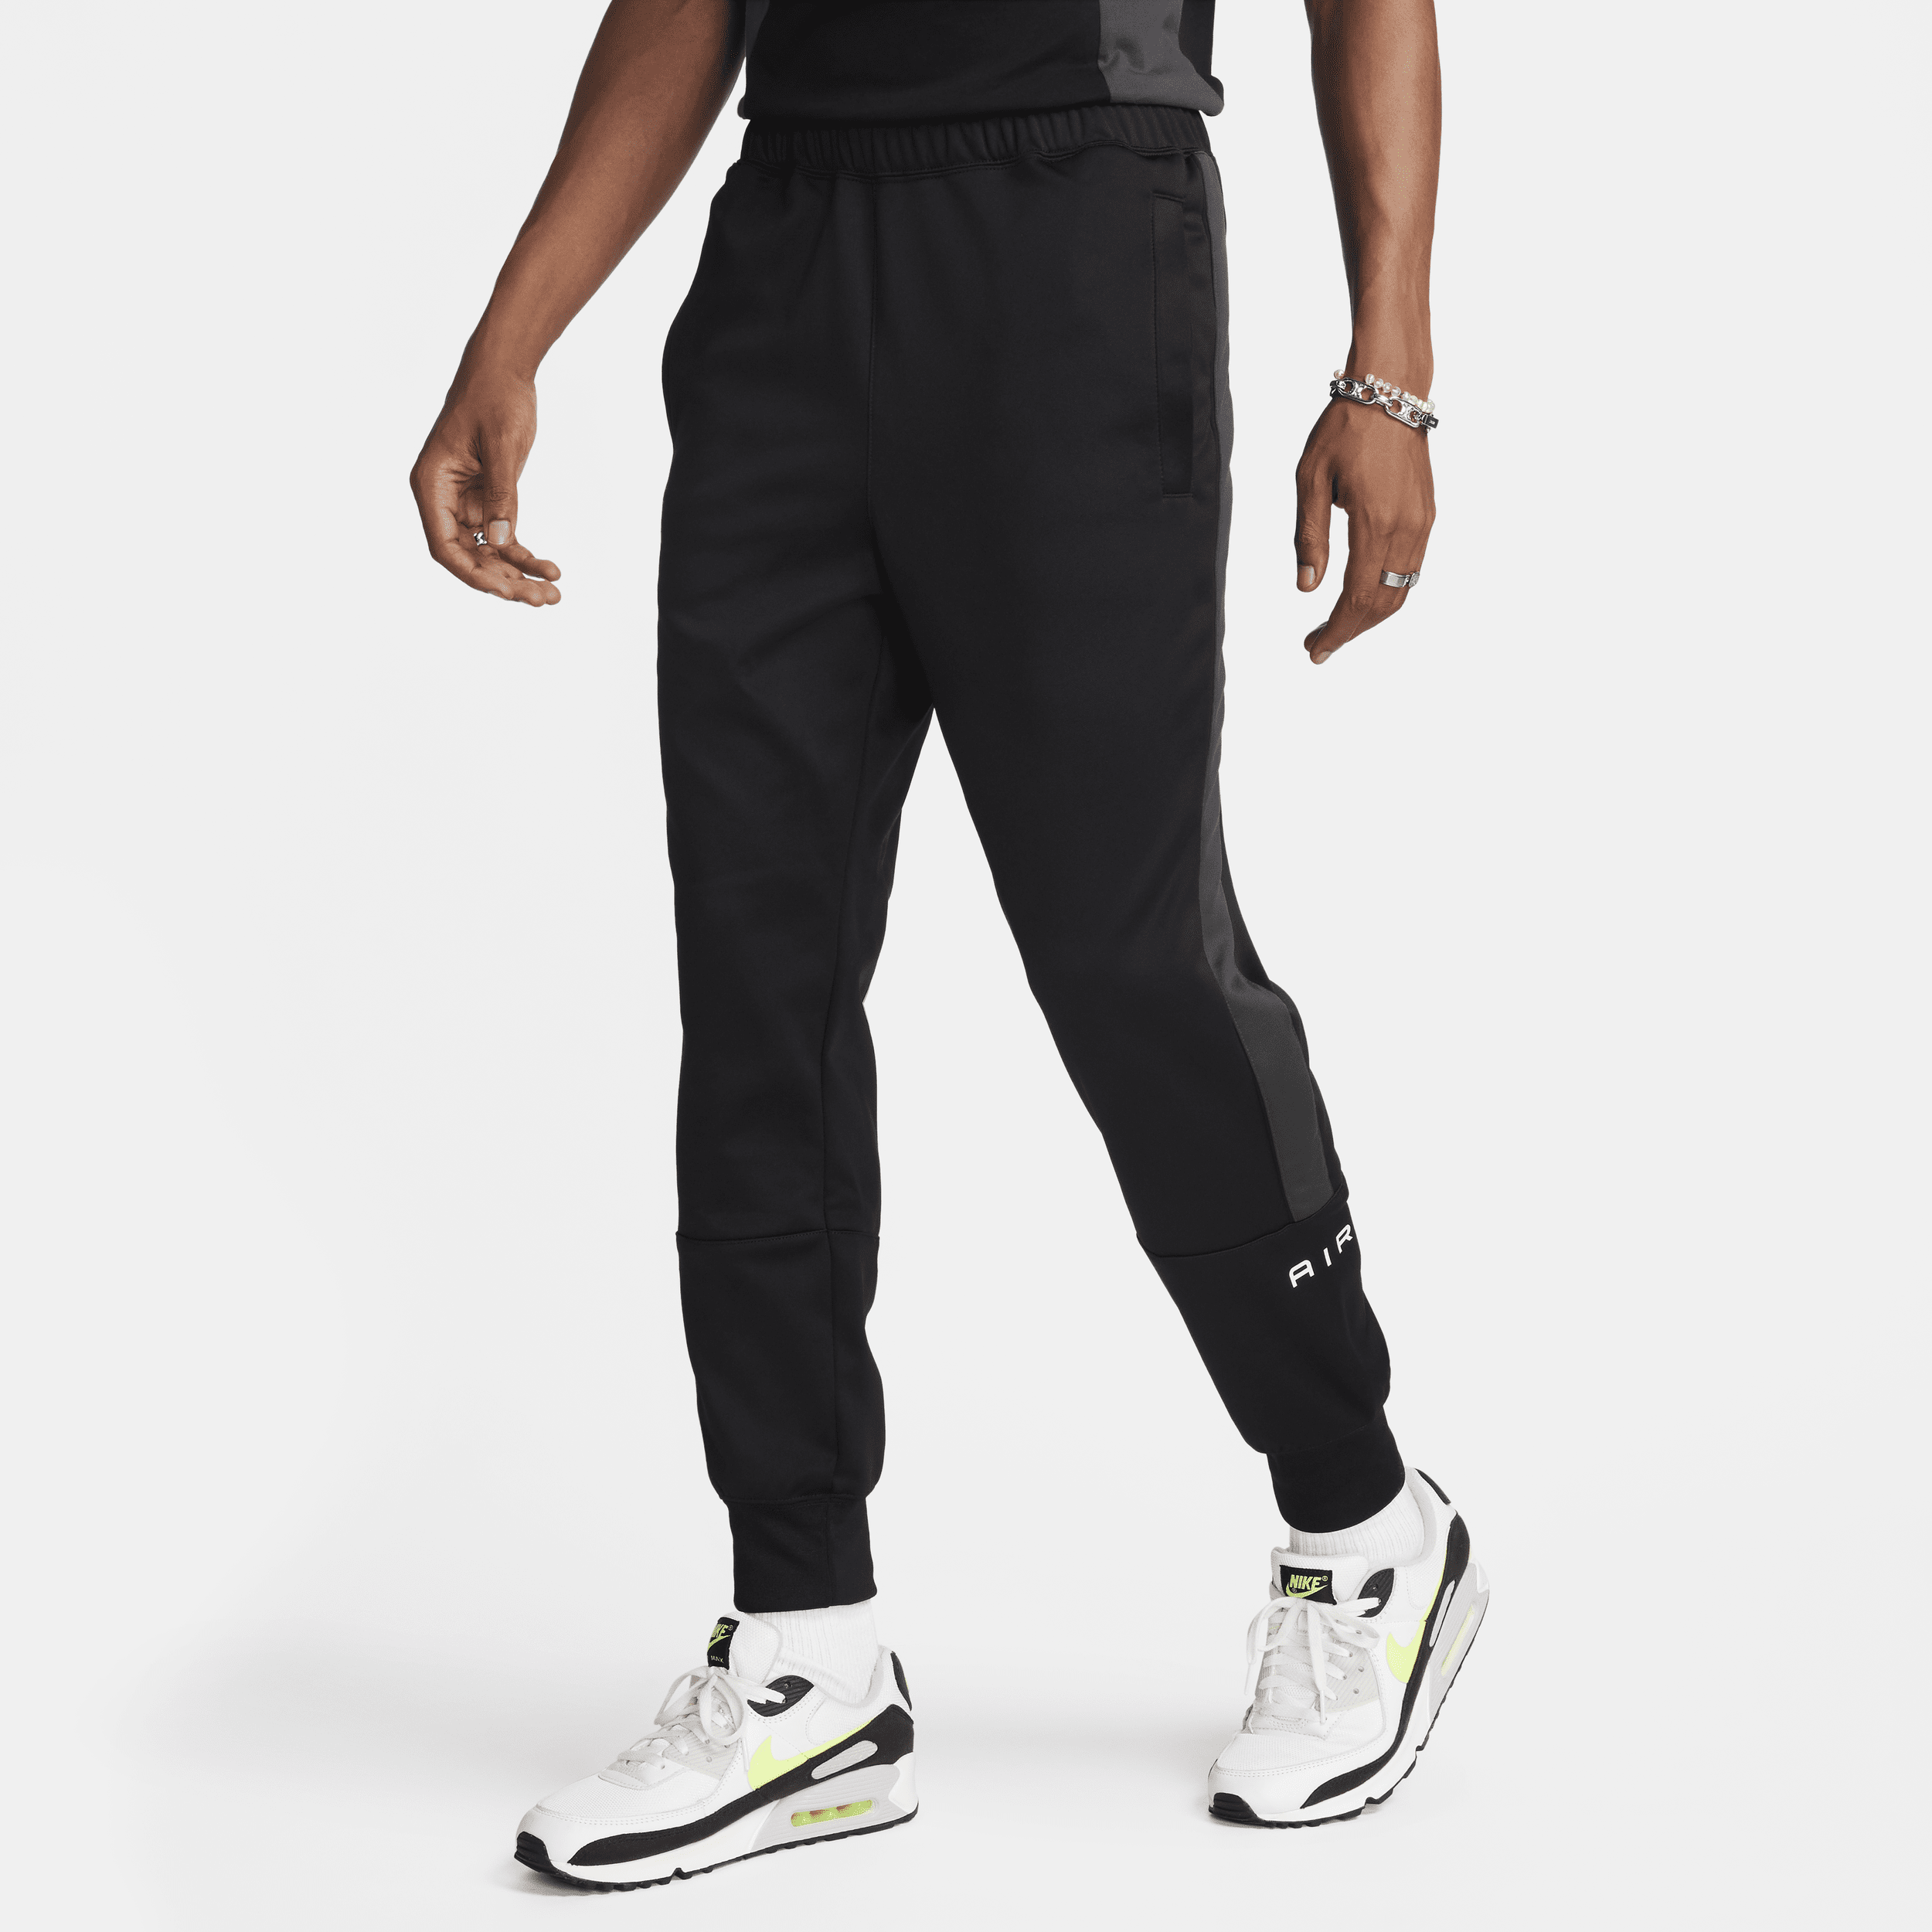 Nike Air Pantalón deportivo - Hombre - Negro